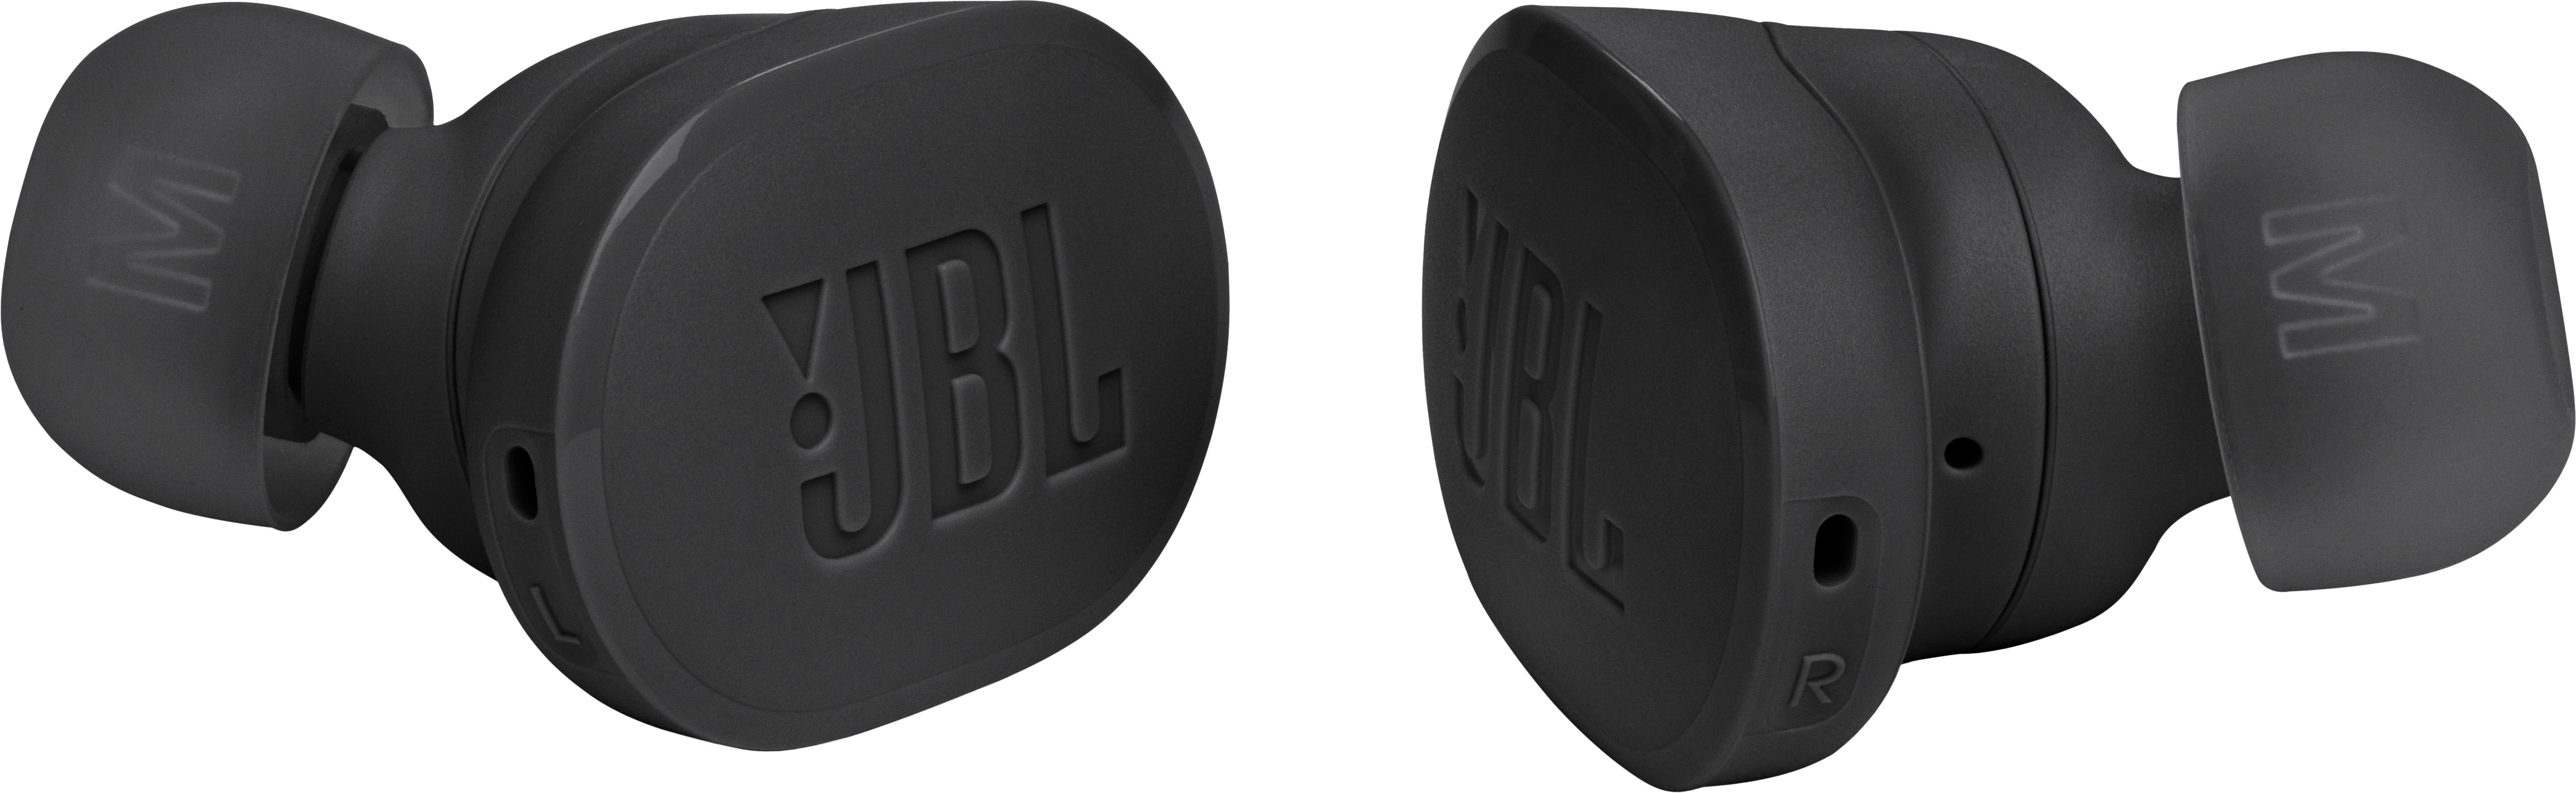 JBL Tune Buds True Wireless Earbuds Noise Buy Black - Cancelling JBLTBUDSBLKAM Best